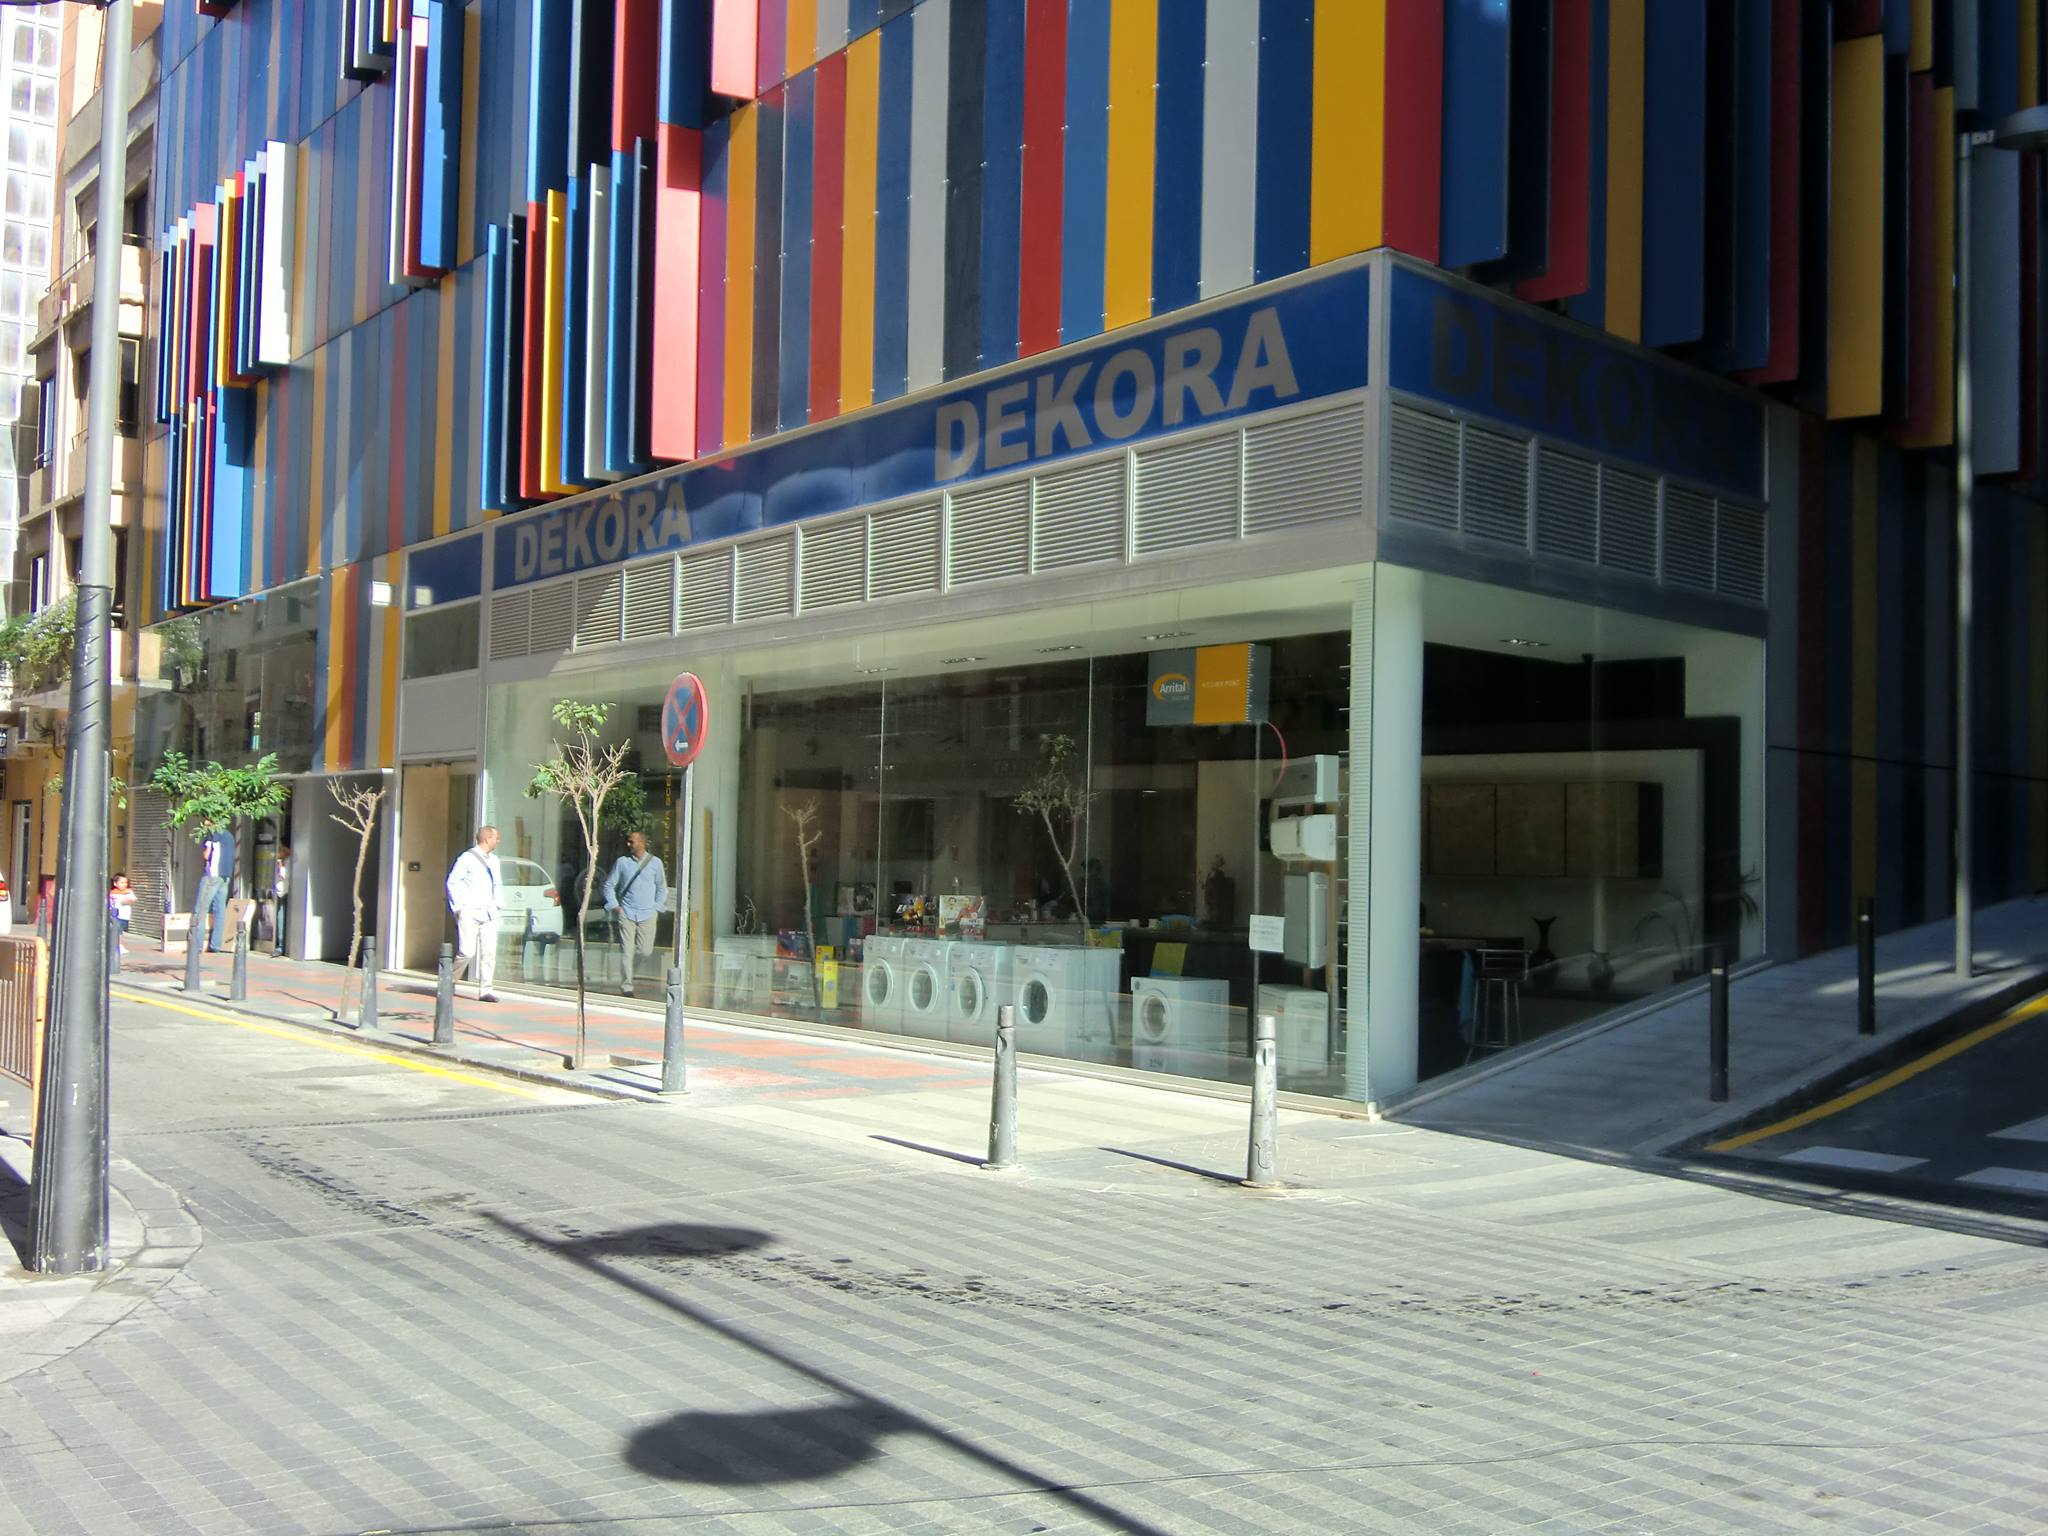 Tienda Dekora Ceuta